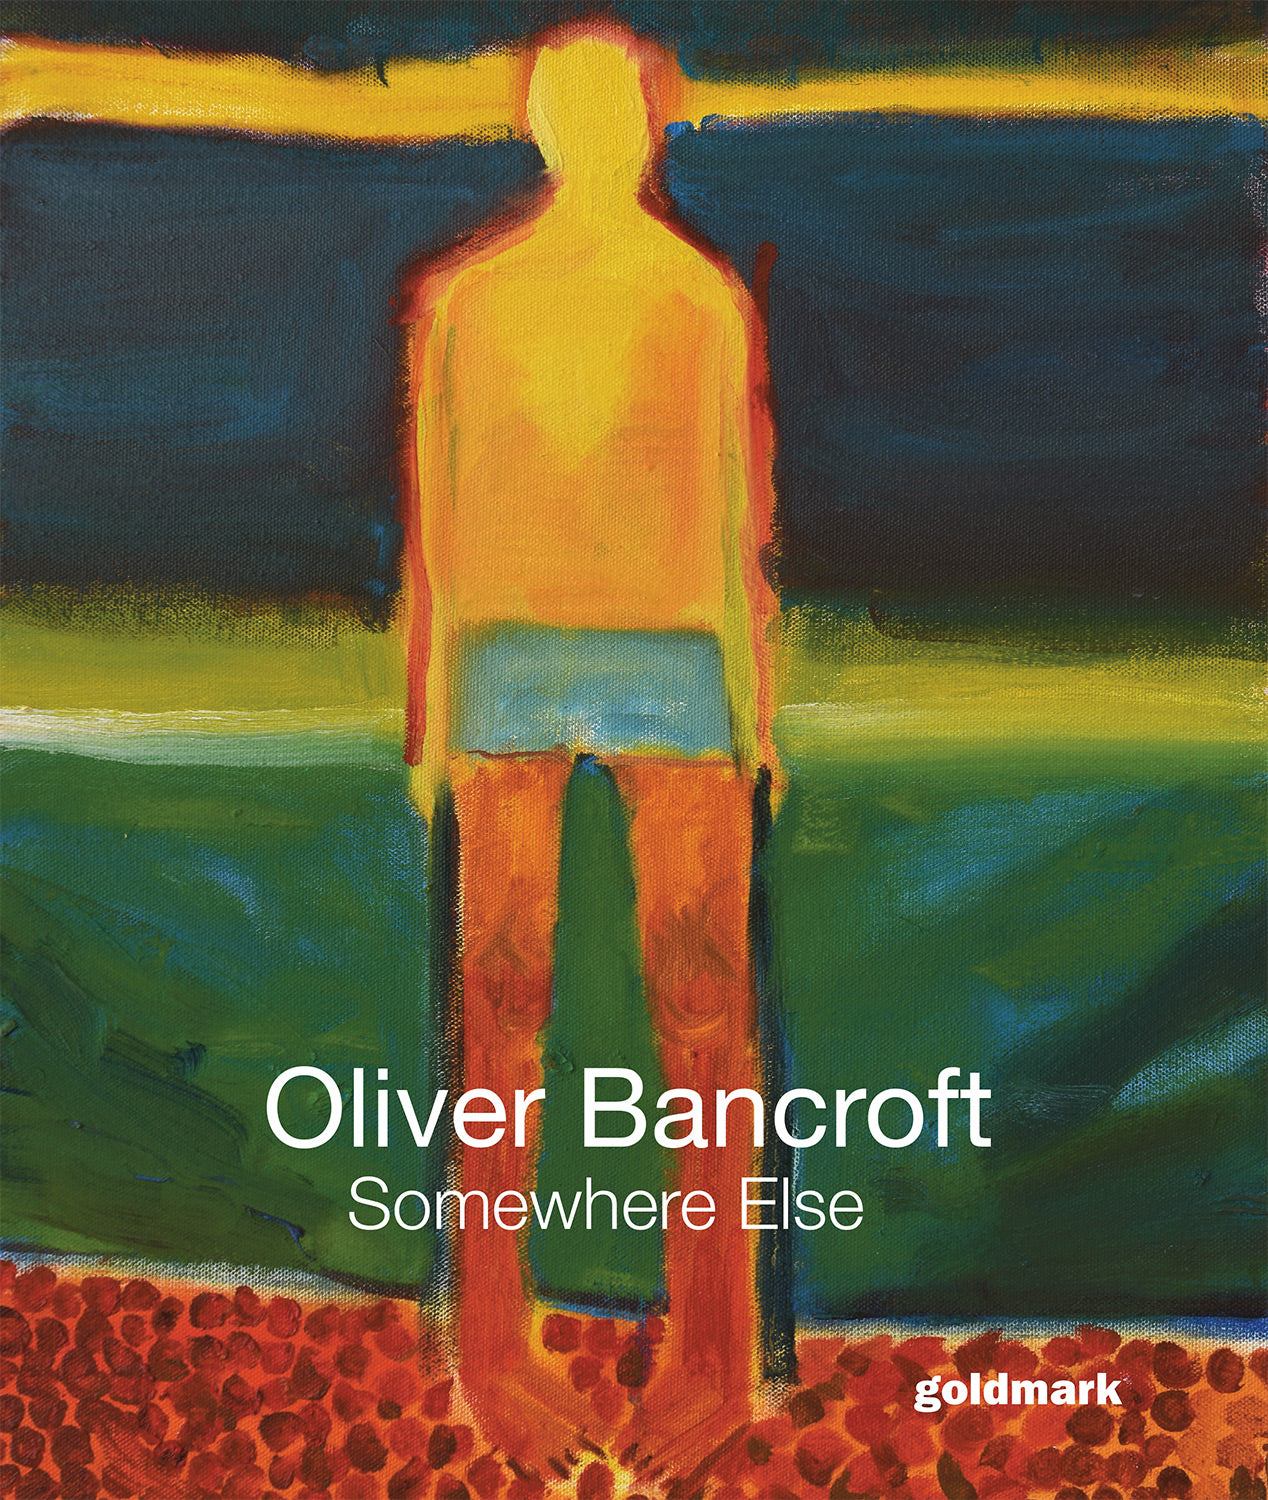 Oliver Bancroft - Somewhere Else